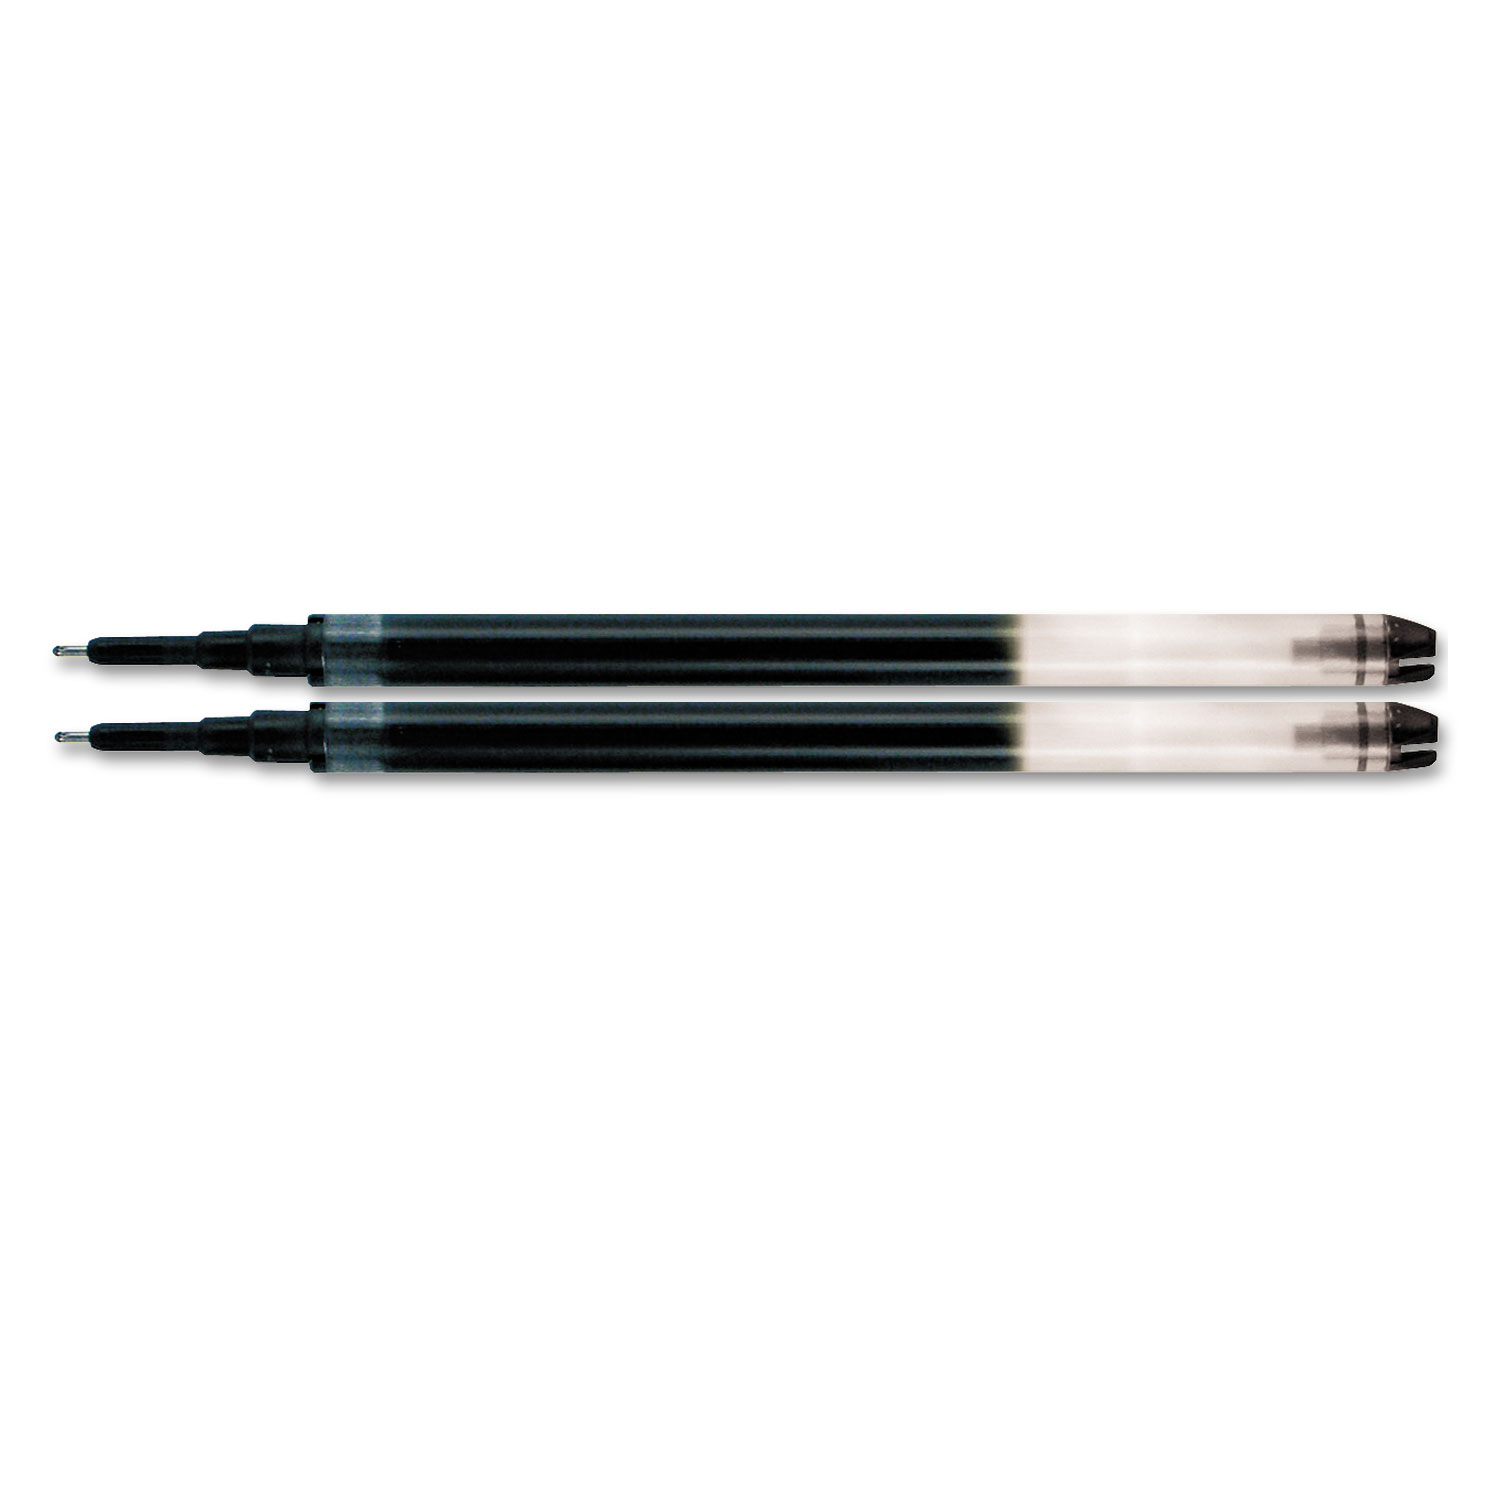 Pilot Precise V5 RT Premium Rolling Ball Pen Refills - 0.70 mm